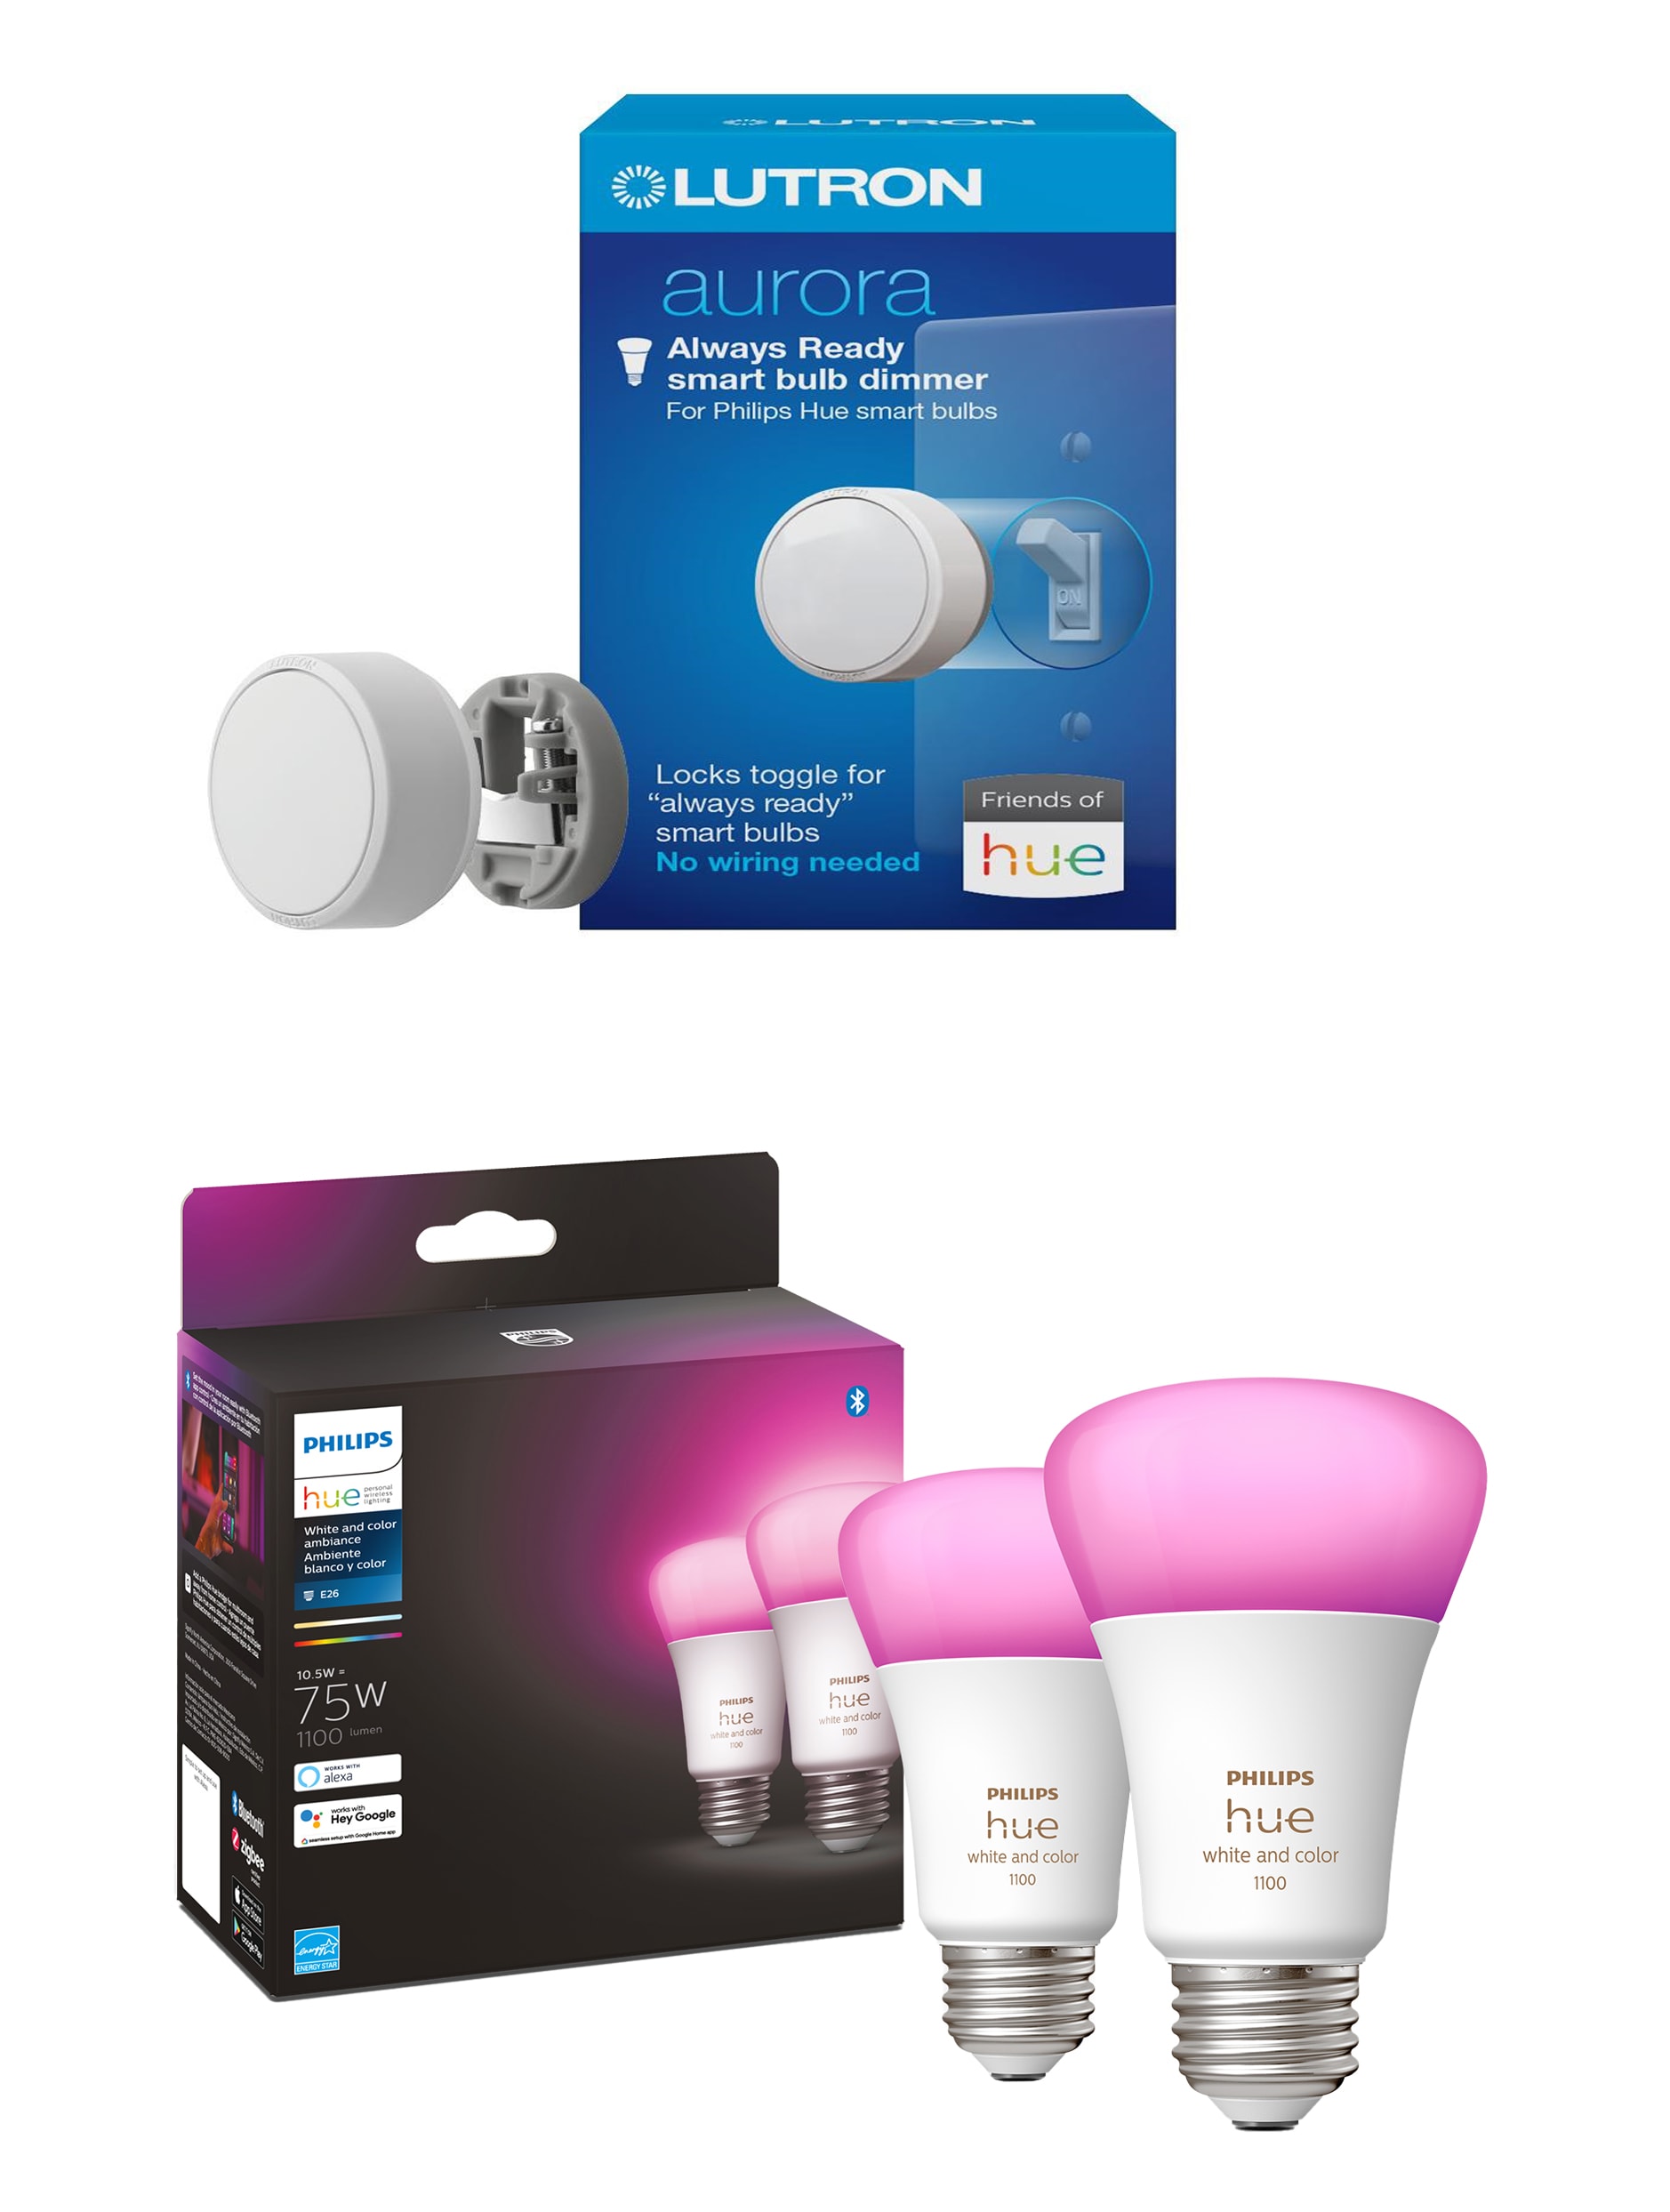 Philips Hue Dimmable Smart LED Light Bulb (2-Pack) & Lutron Aurora Light Dimmer Switch, White